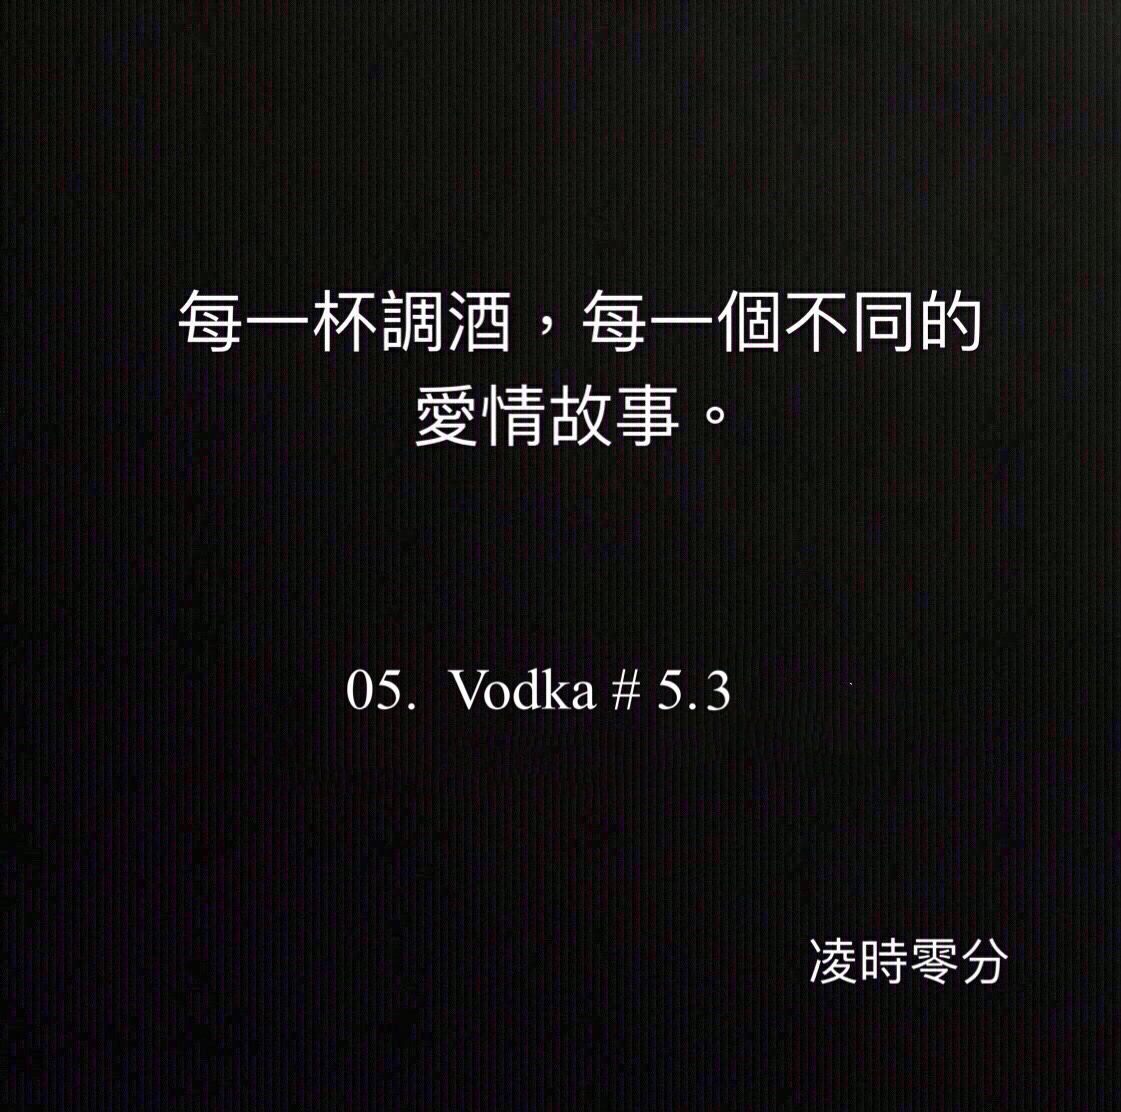 （短篇故事）每一杯調酒，每一個不同的愛情故事 05. Vodka #5.3